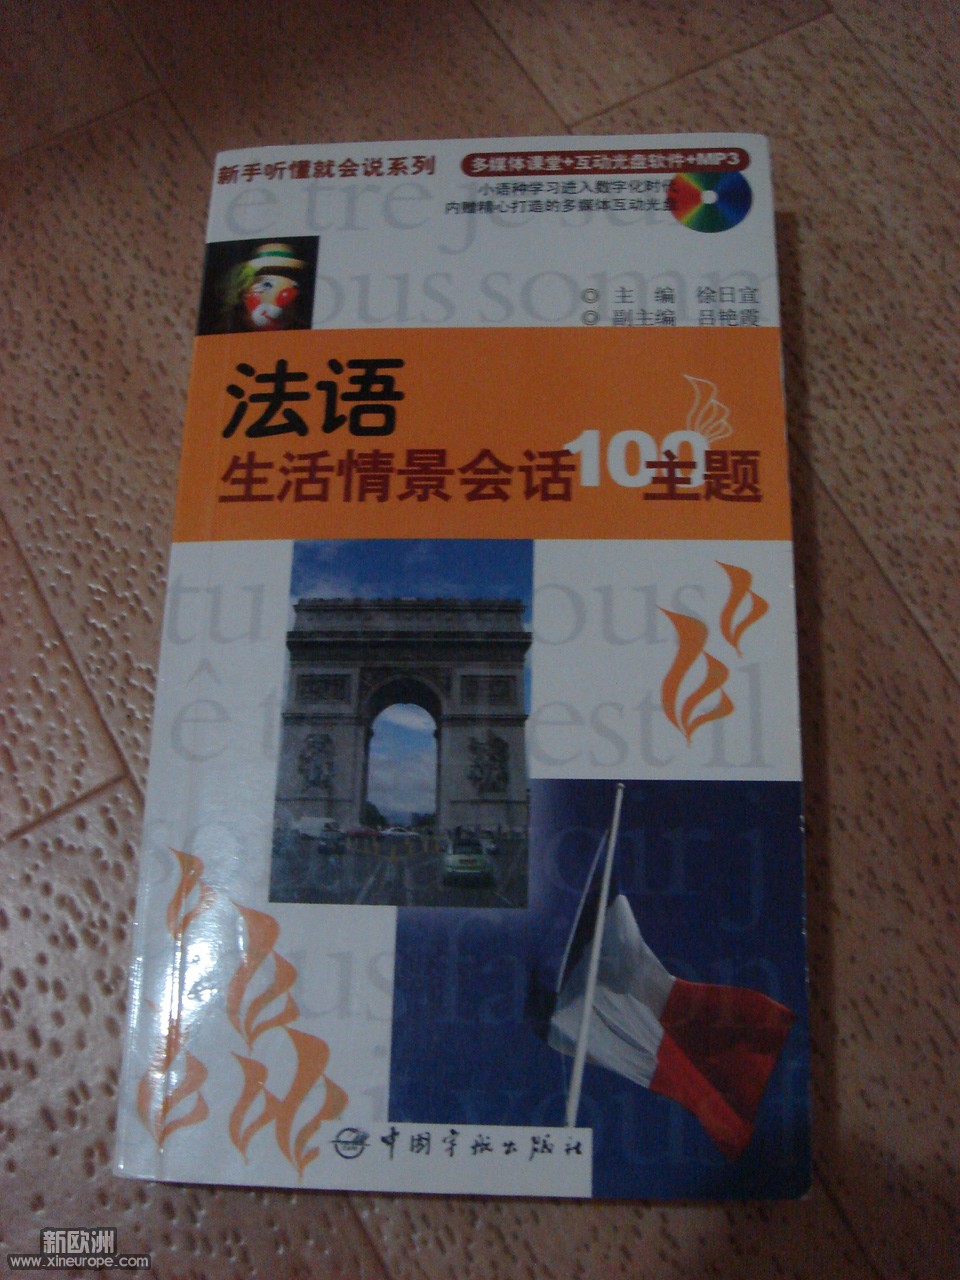 《法语生活情景会话》 CD-2欧.JPG